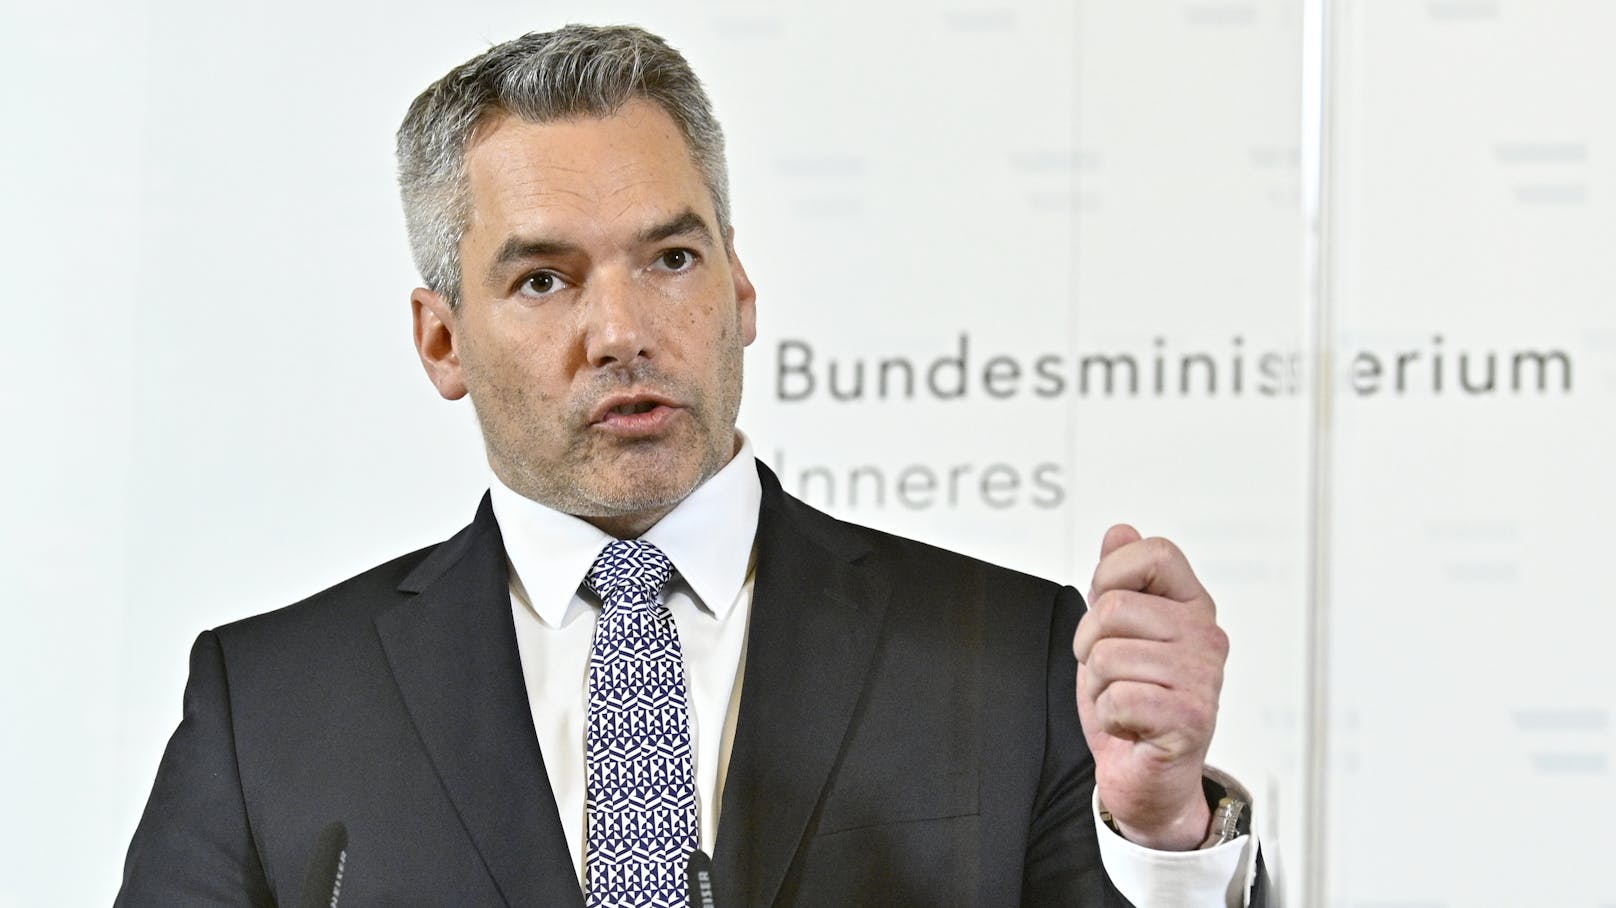 Innenminister Karl Nehammer